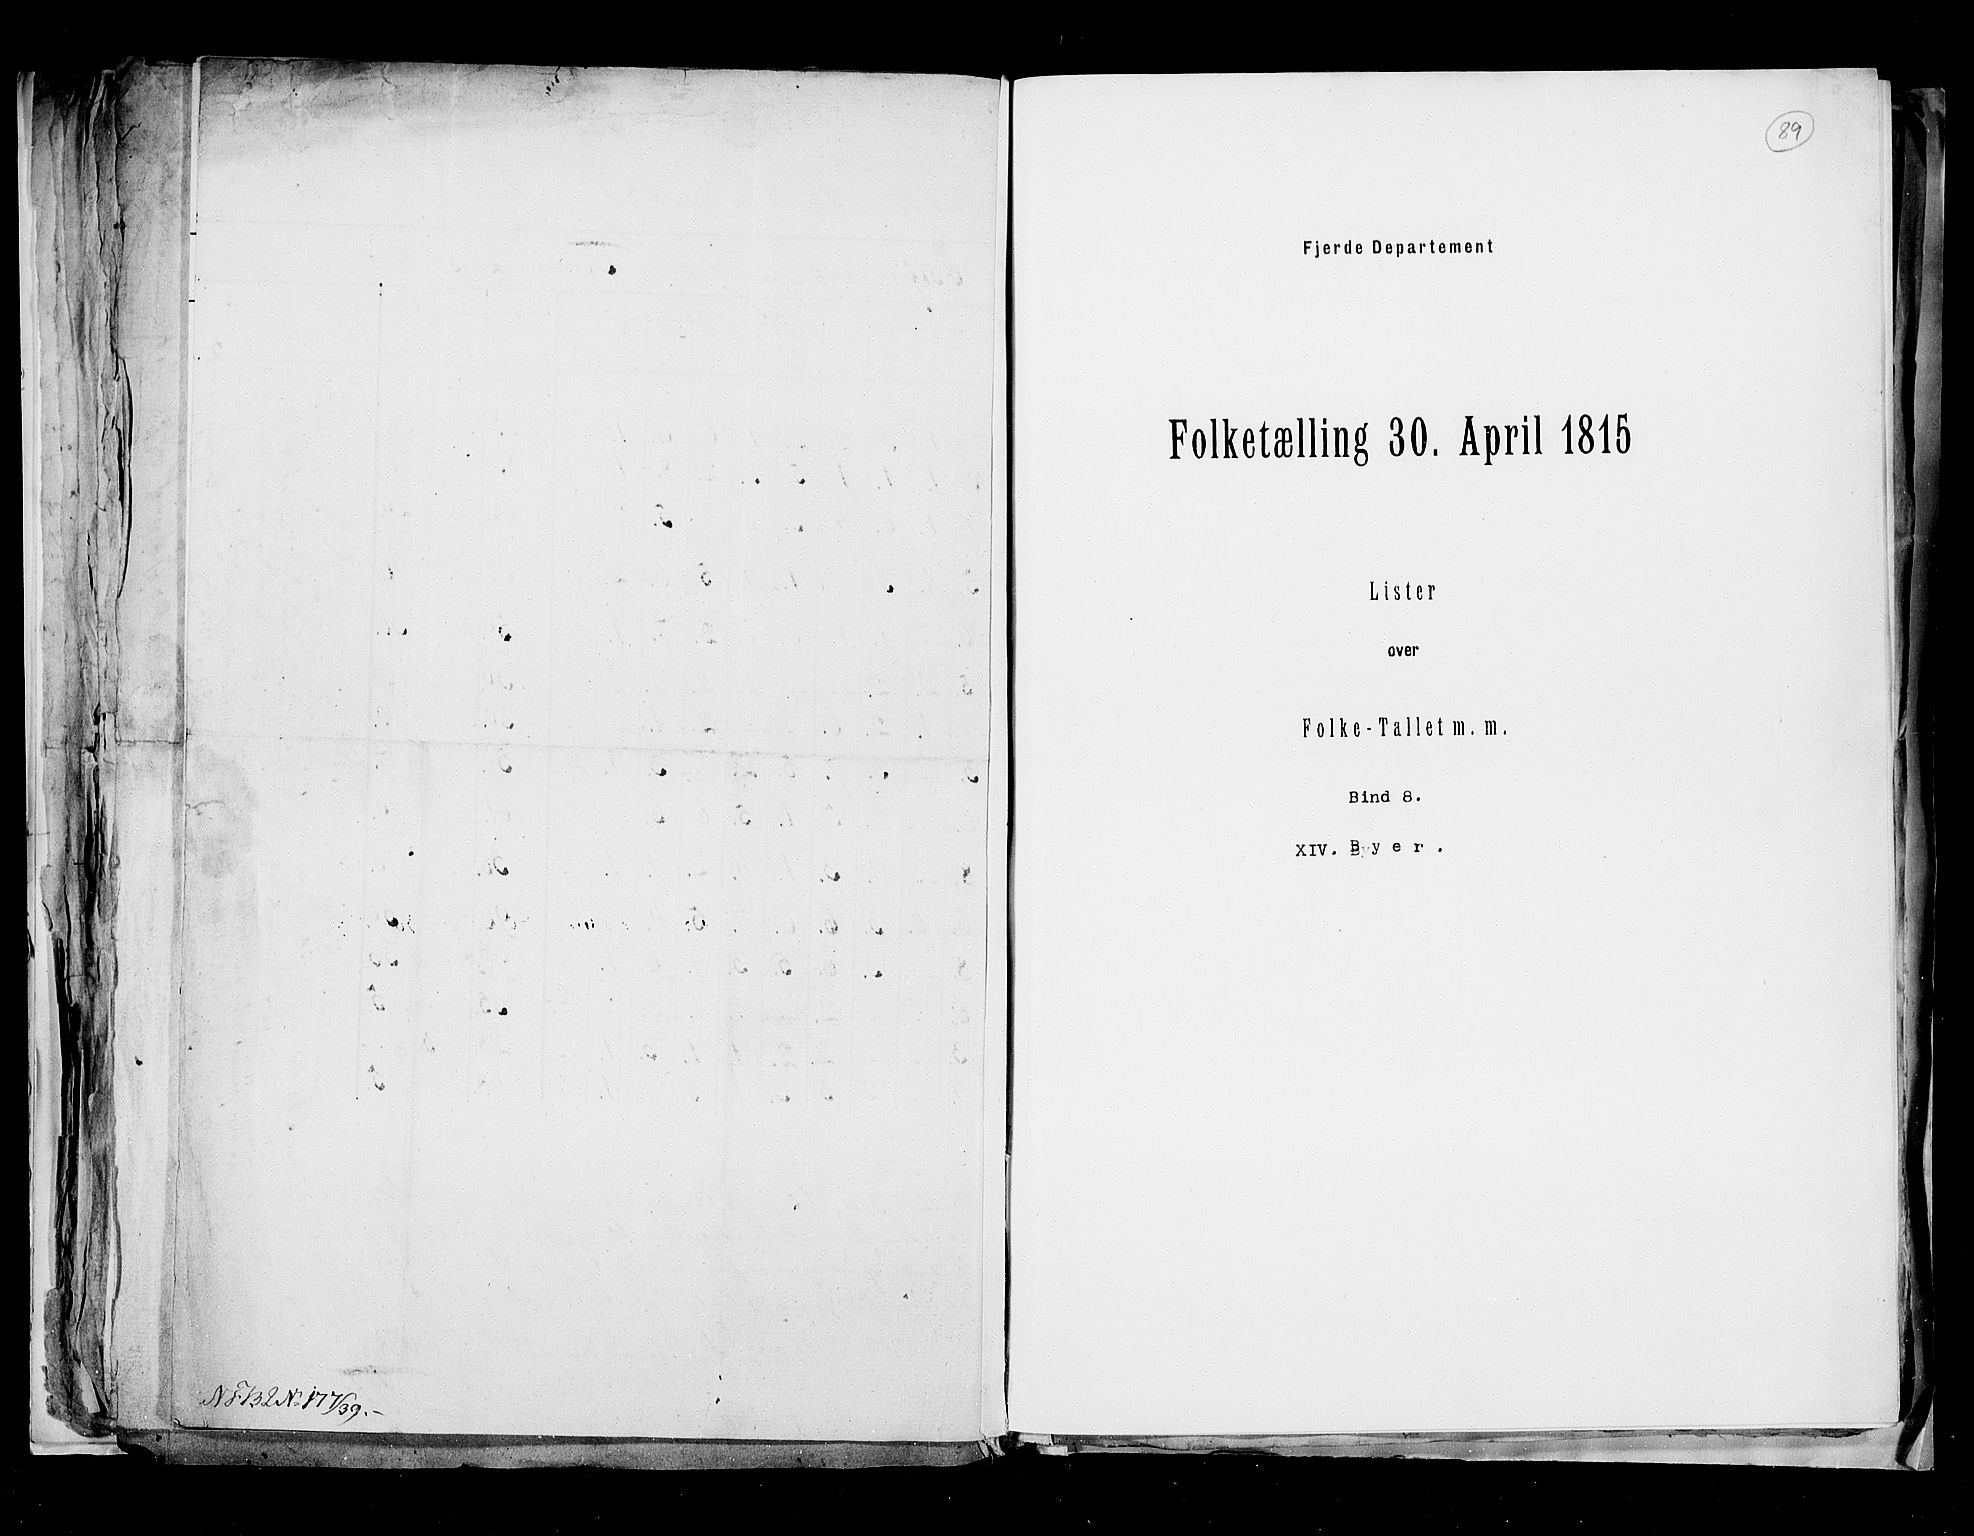 RA, Folketellingen 1815, bind 8: Folkemengdens bevegelse i Tromsø stift og byene, 1815, s. 89